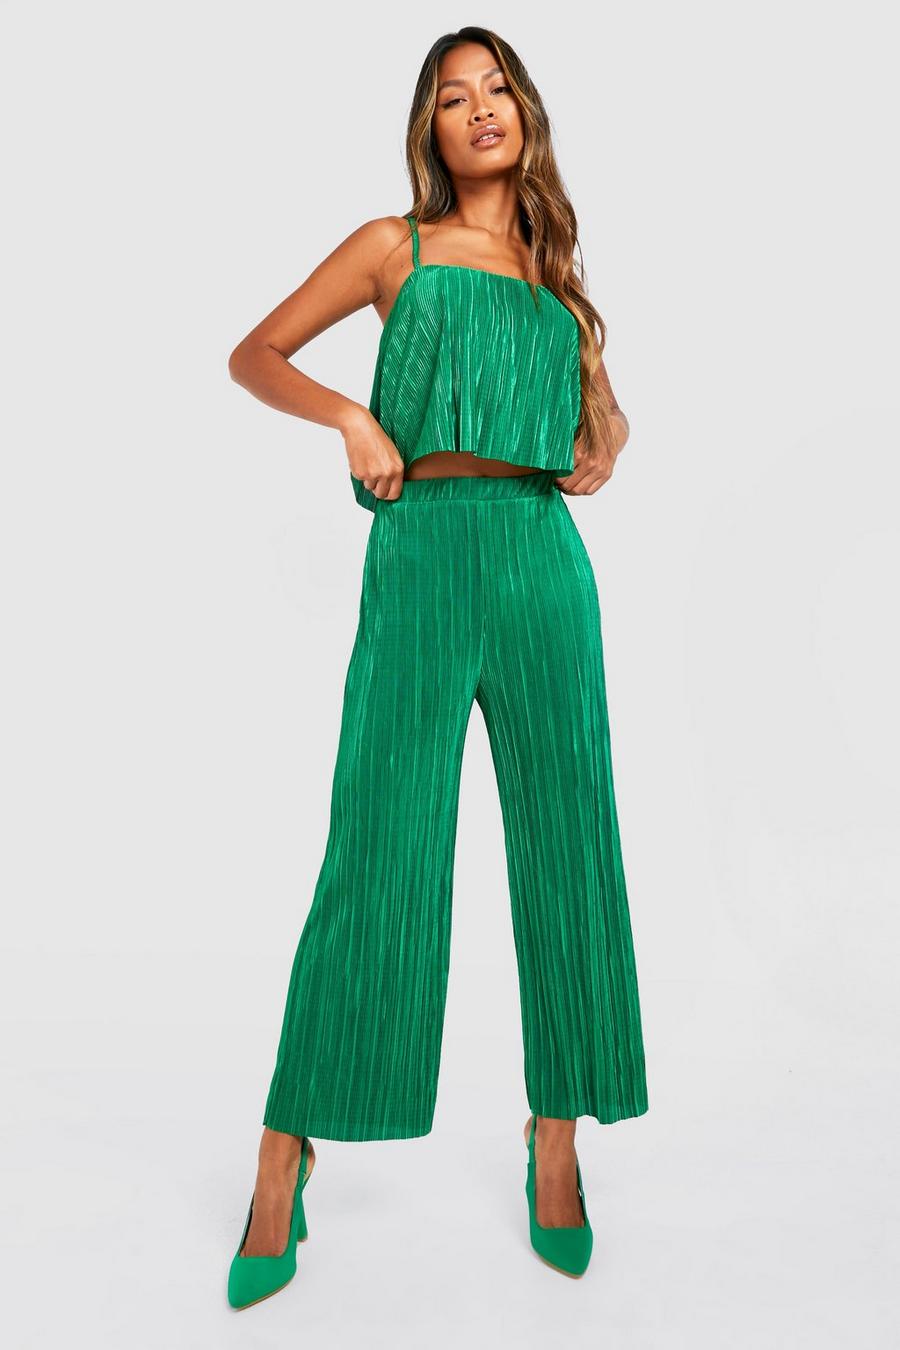 Ensemble plissé avec débardeur court et jupe-culotte, Bright green image number 1